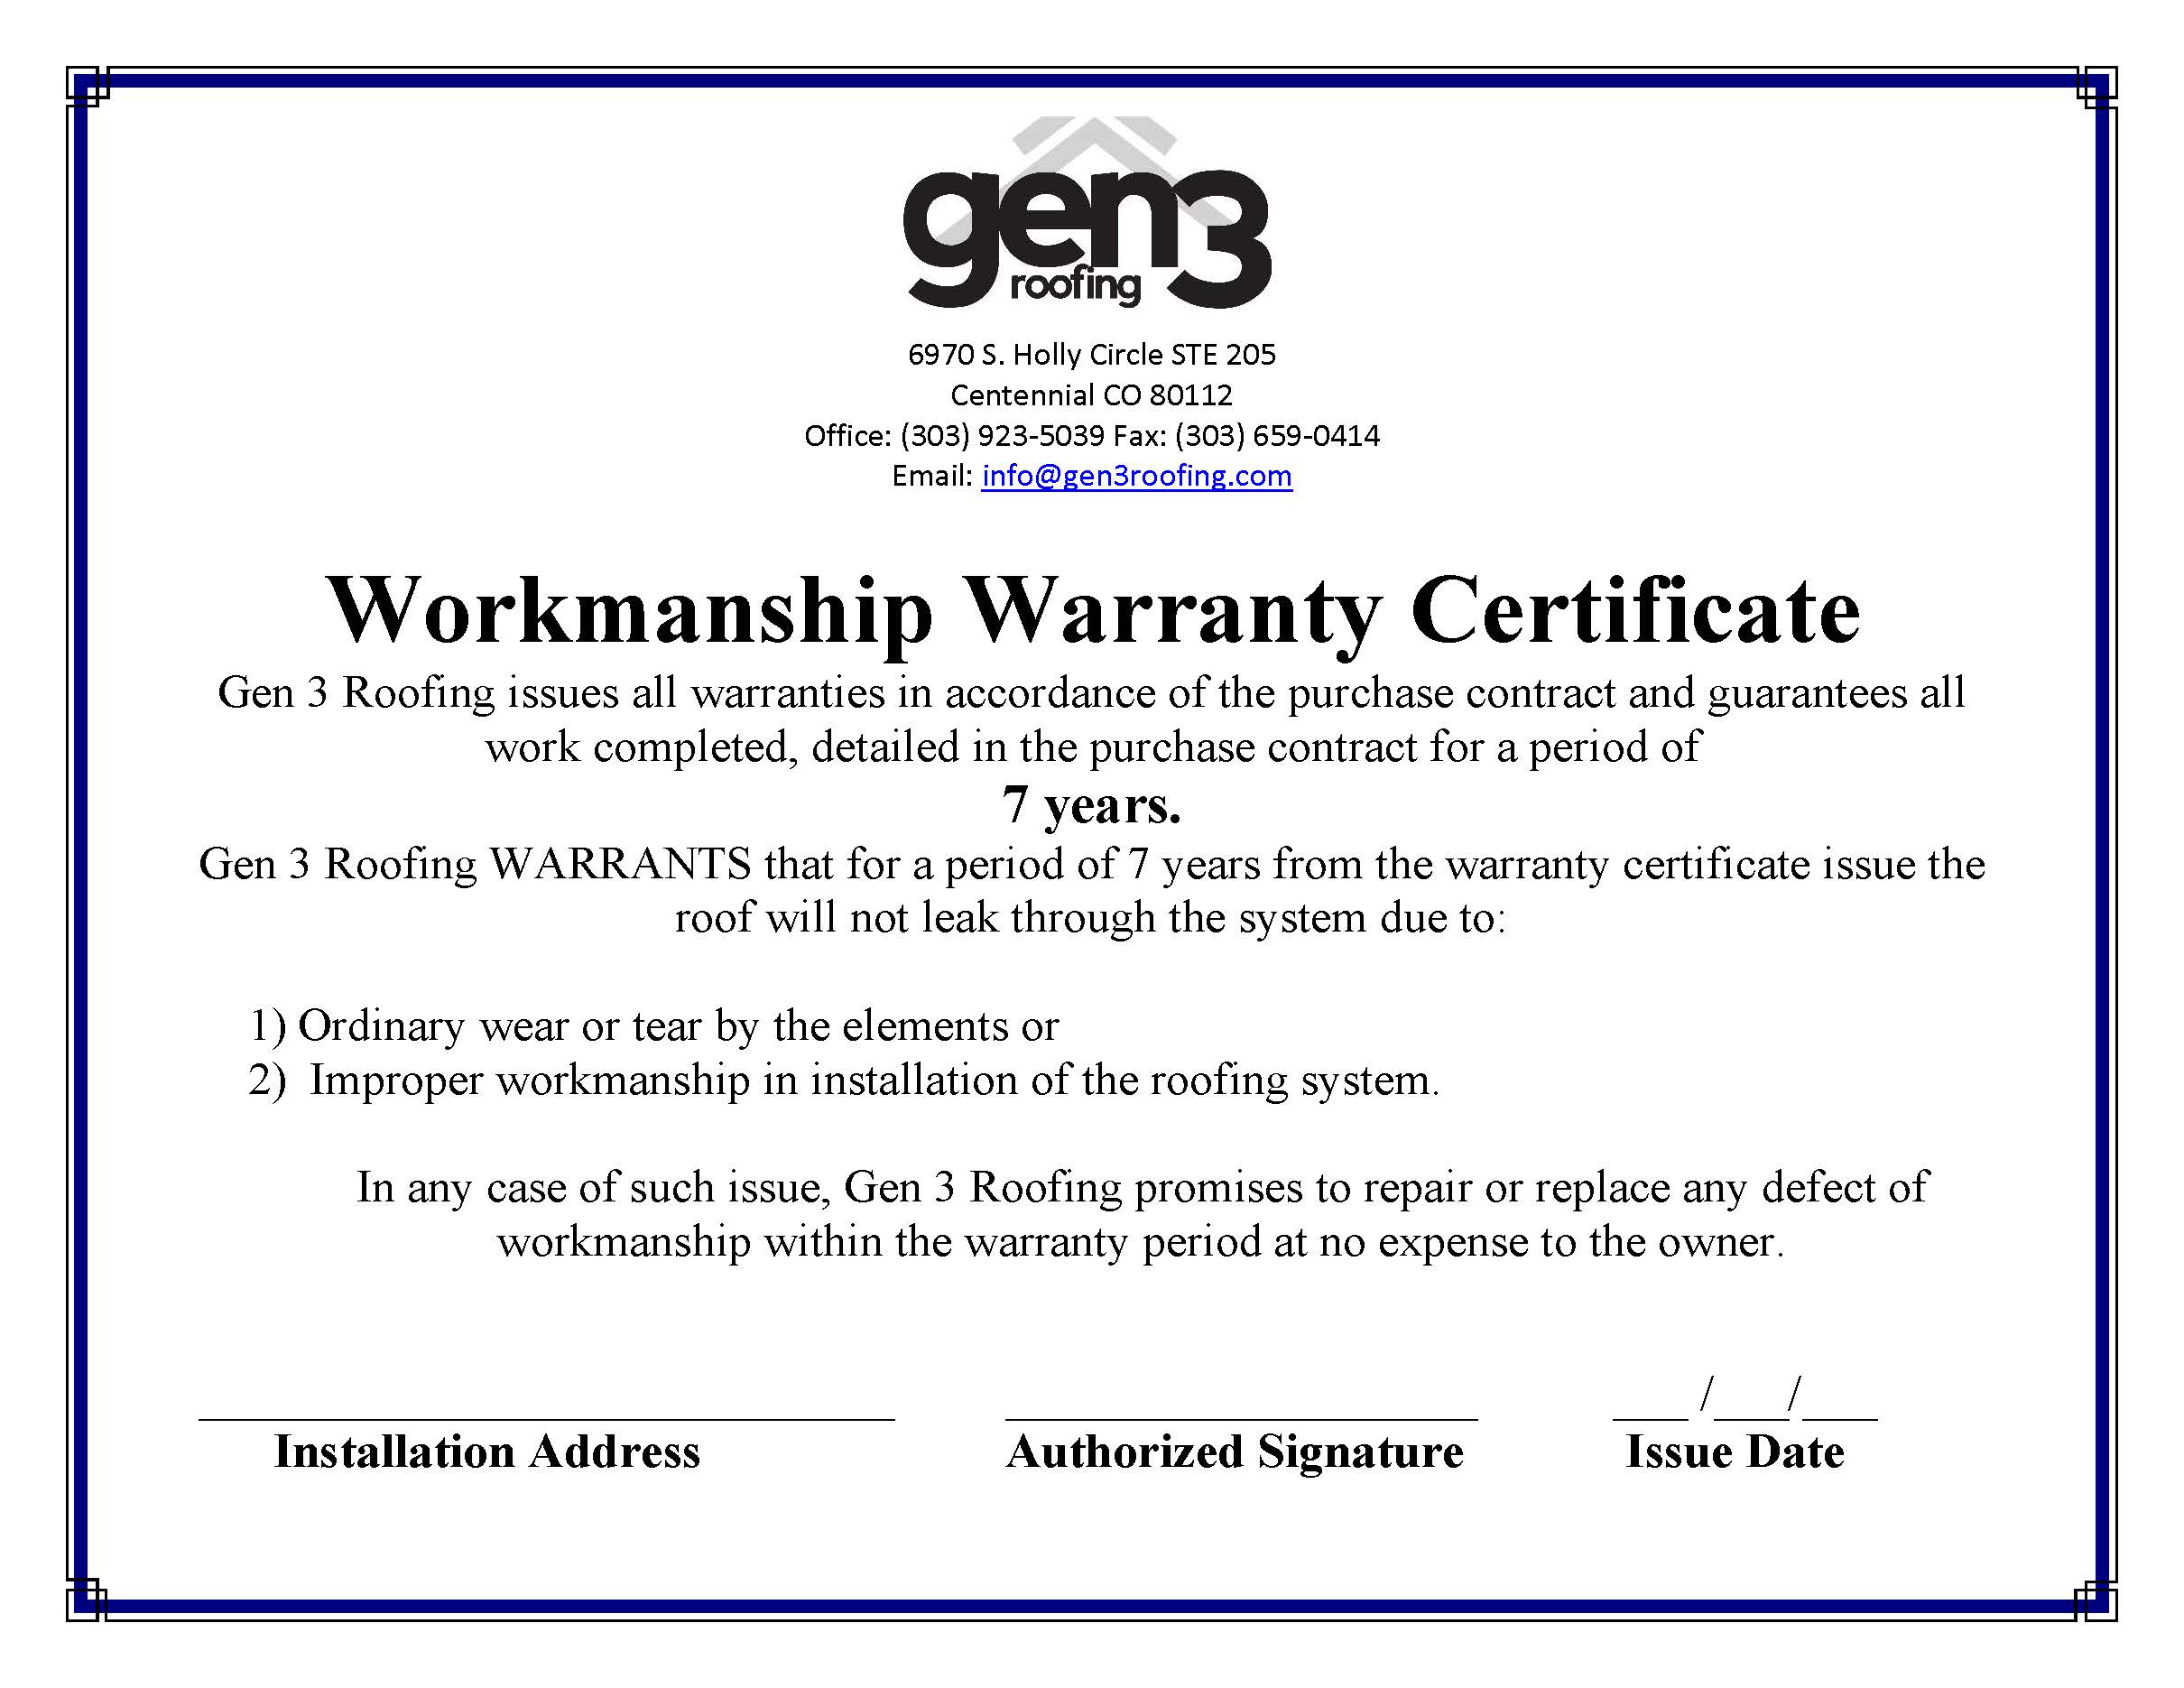 gen-3-roofing-workmanship-warranty-certificate-011918